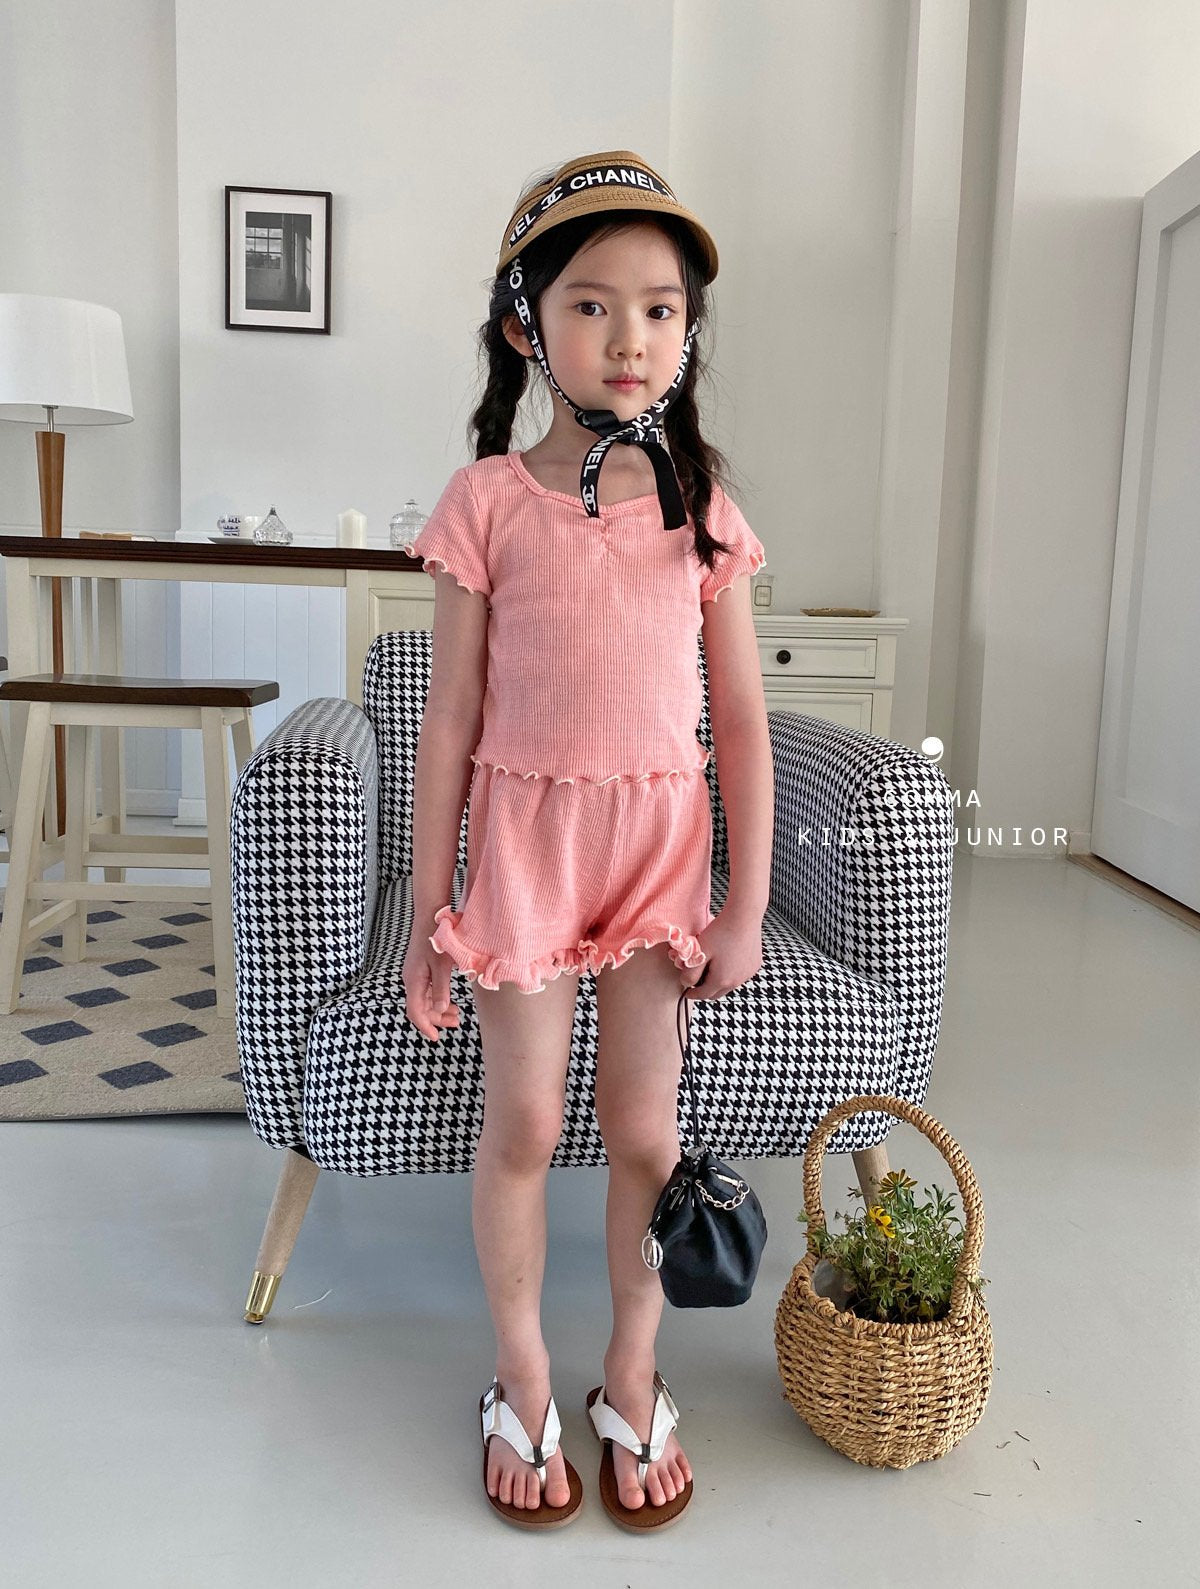 【注文後取り寄せ】韓国子供服 Comma 女の子 子供服  マーガリンセットアップ 2色 80-150サイズのコピー